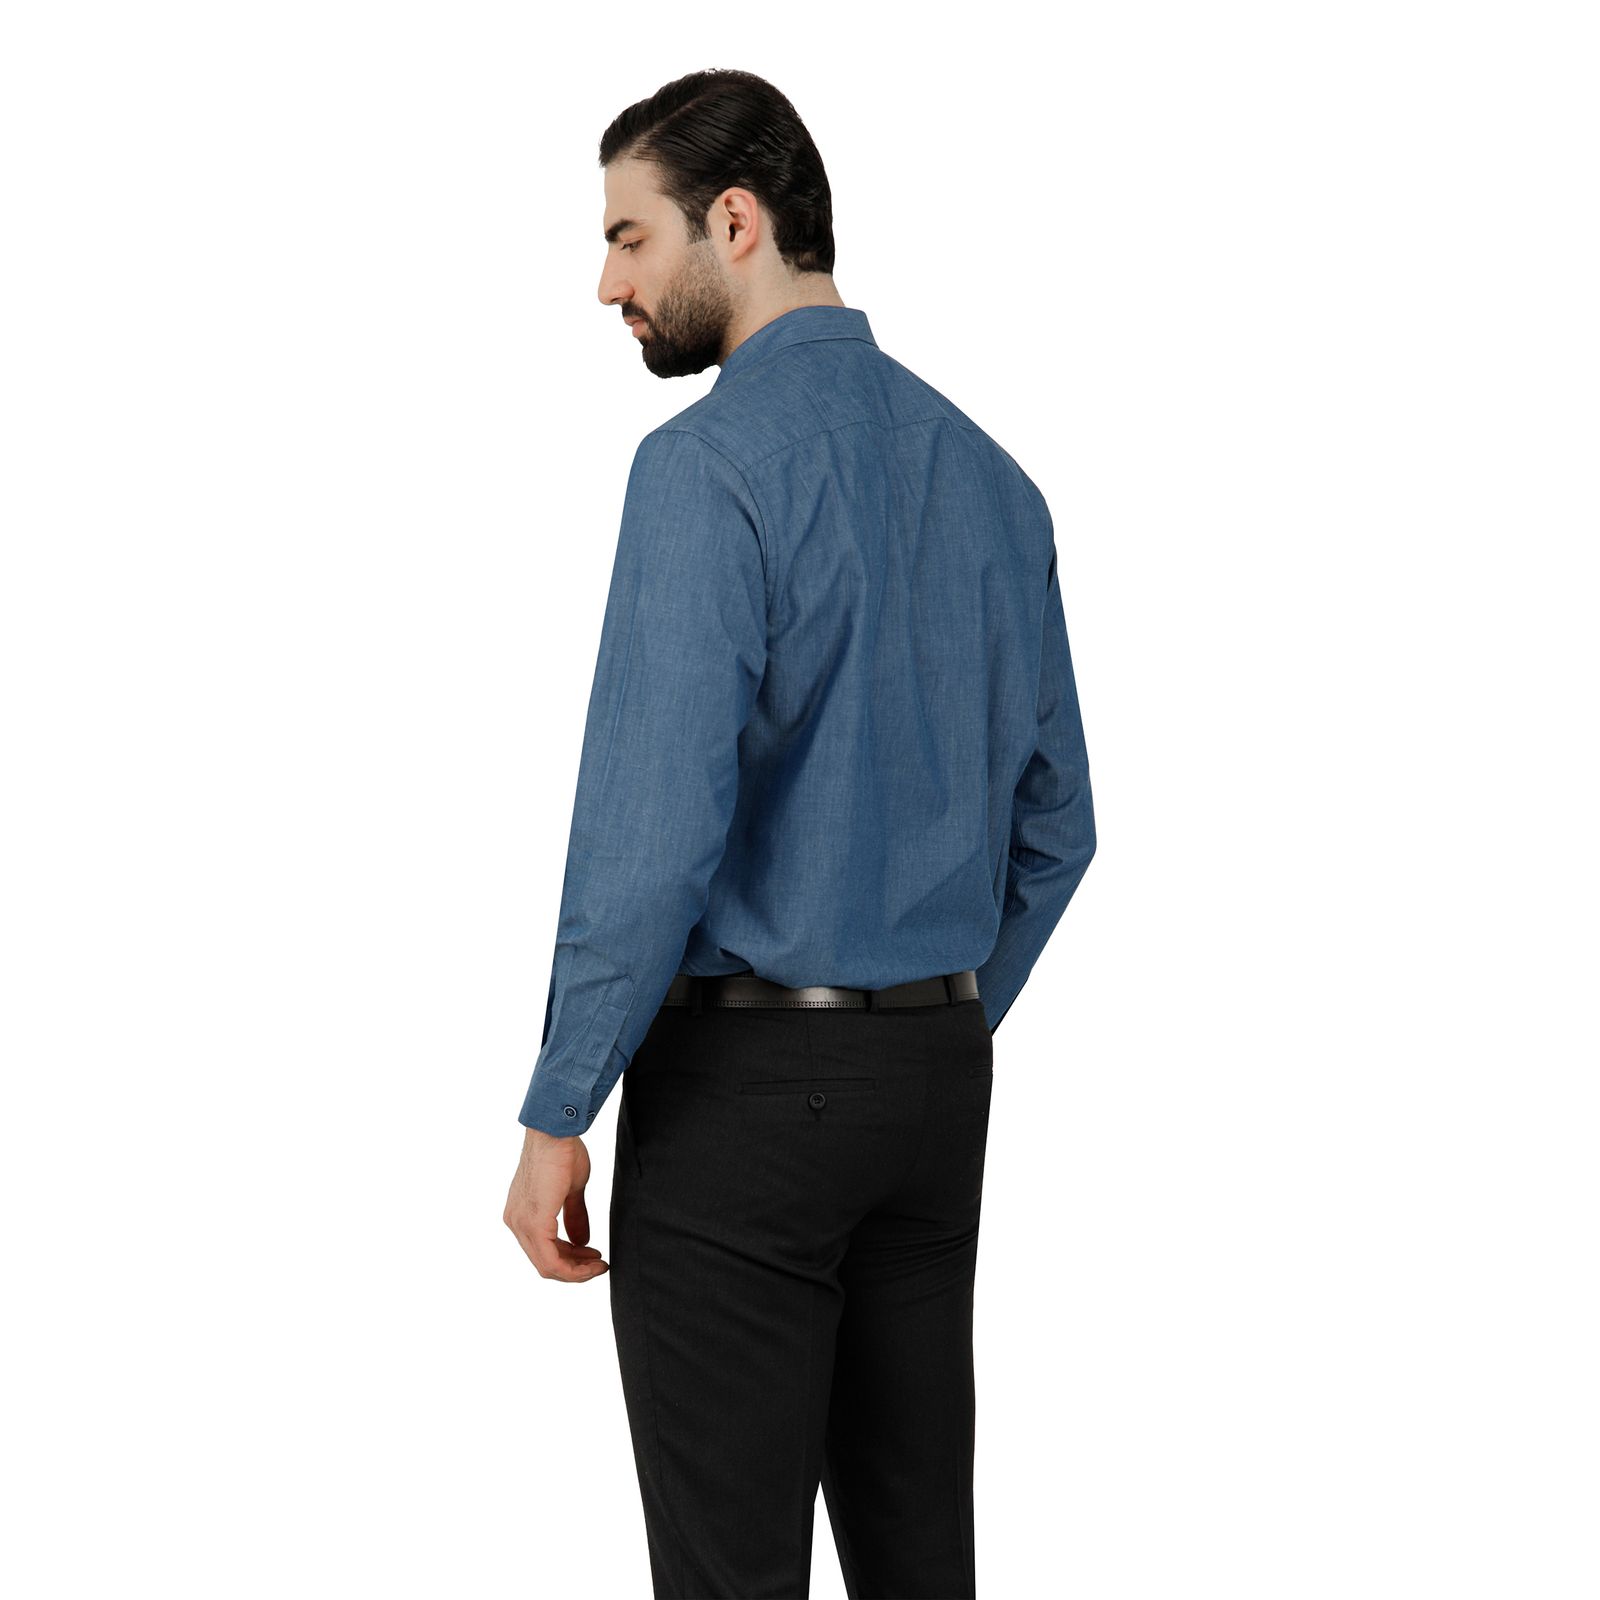 پیراهن آستین بلند مردانه پاتن جامه مدل   102721020242290 طرح جین -  - 3